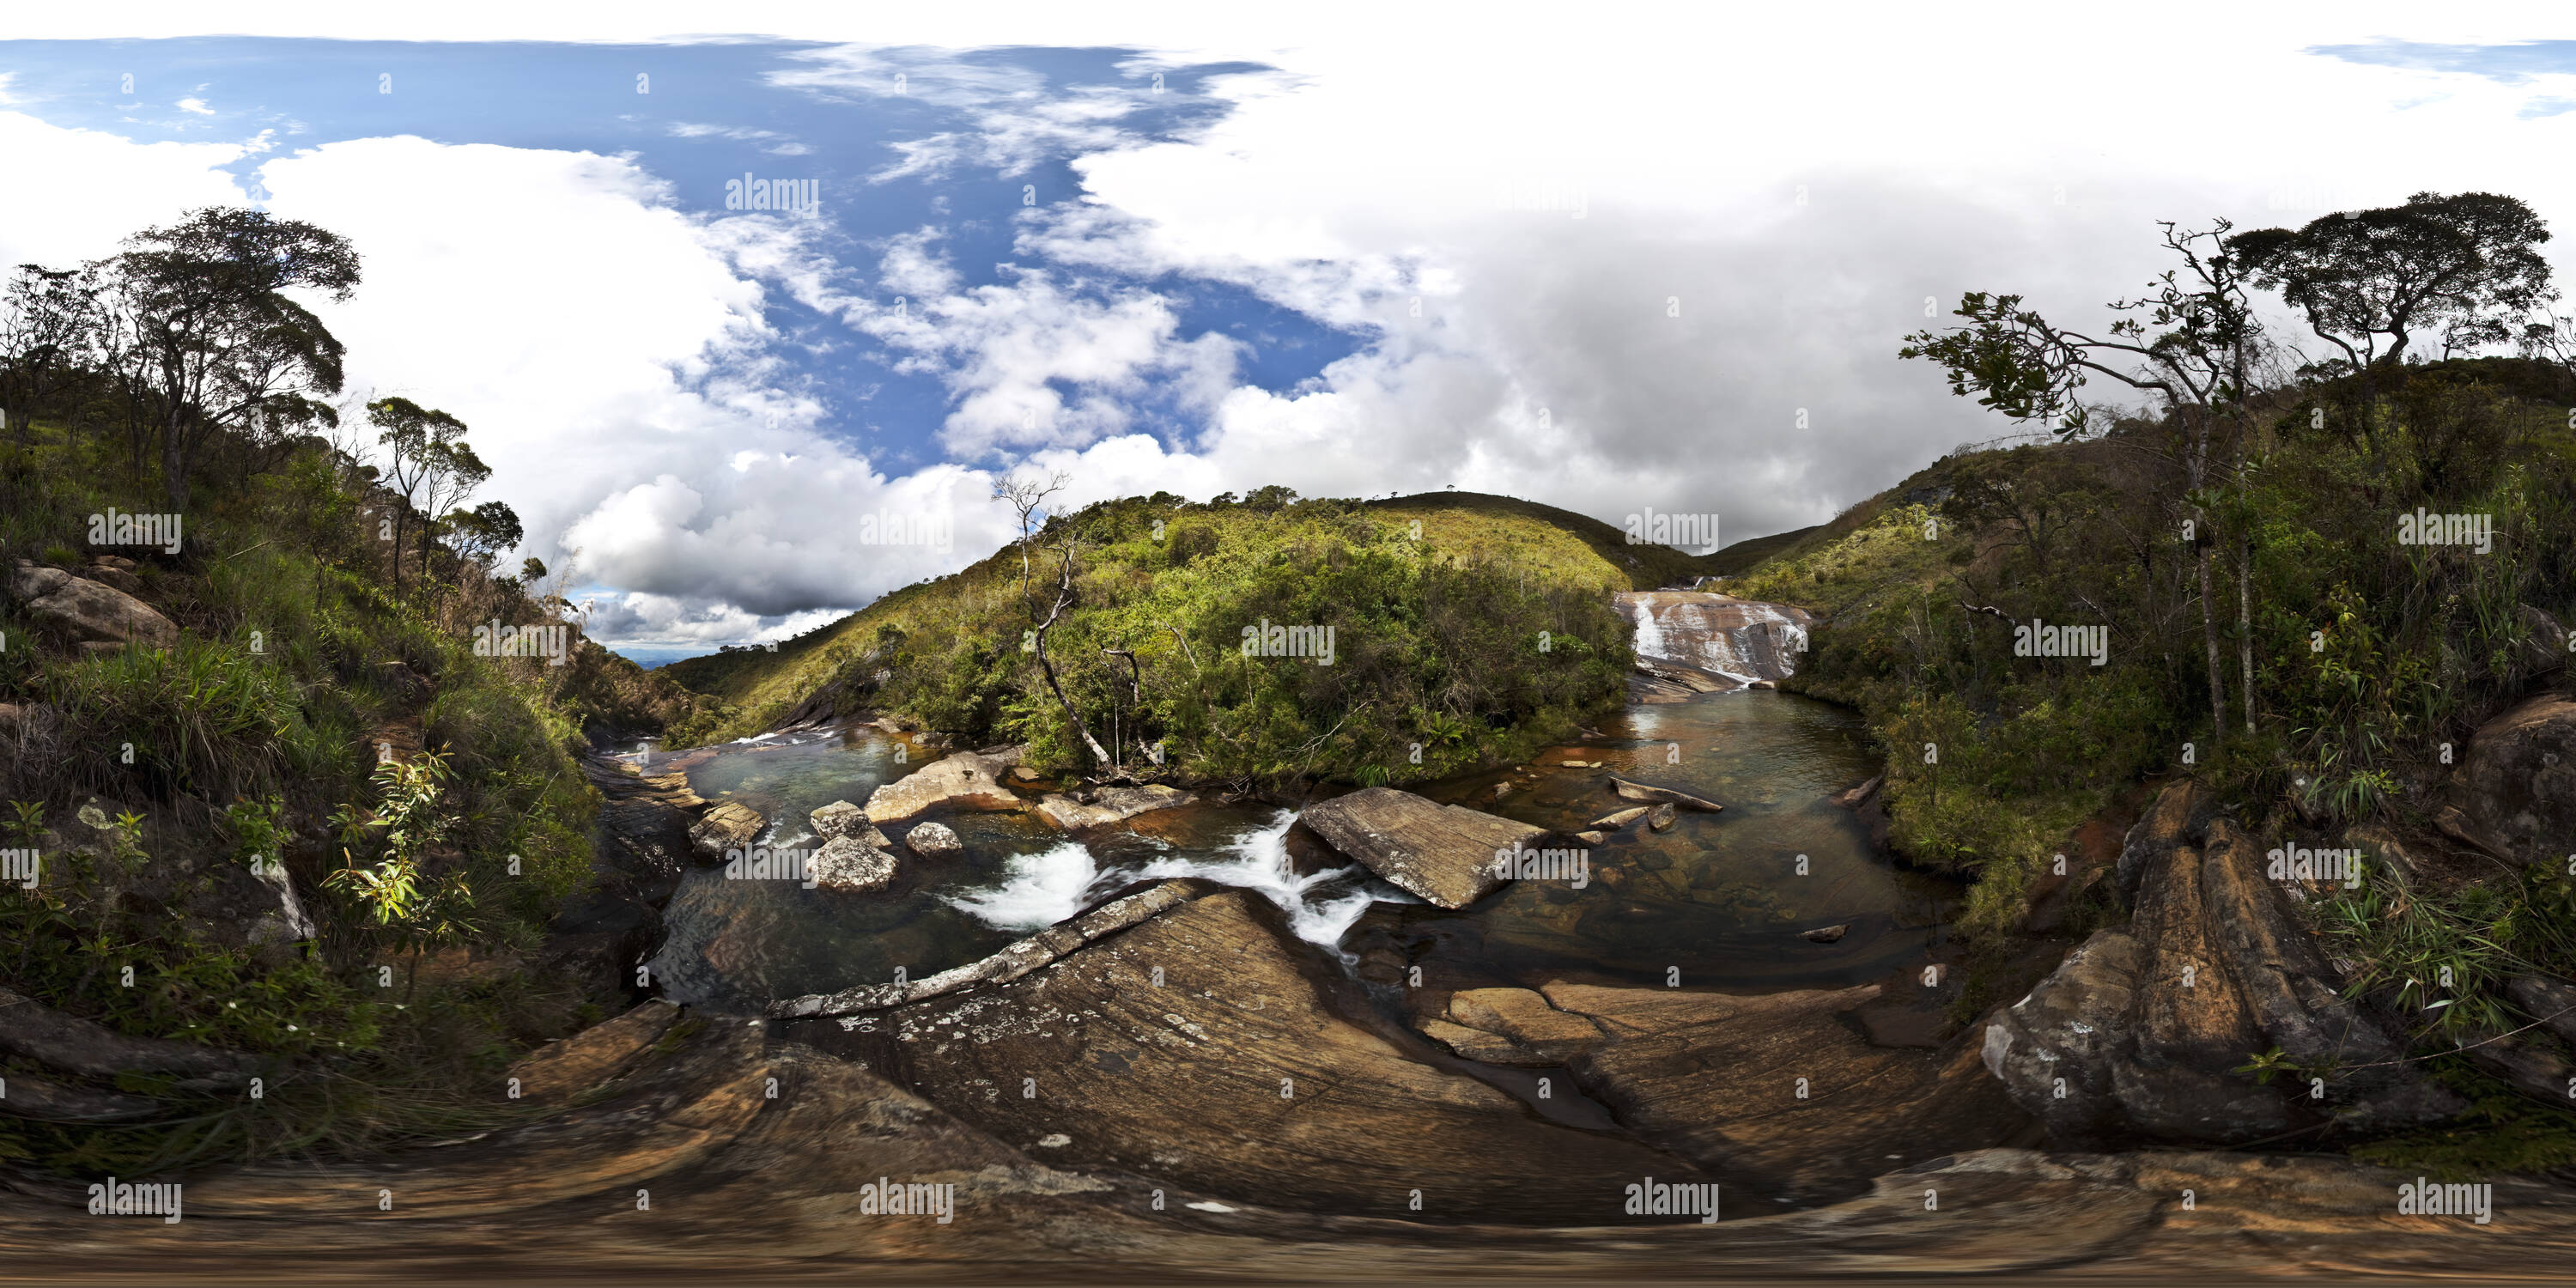 360 degree panoramic view of Parque do Caparao Vale Encantado